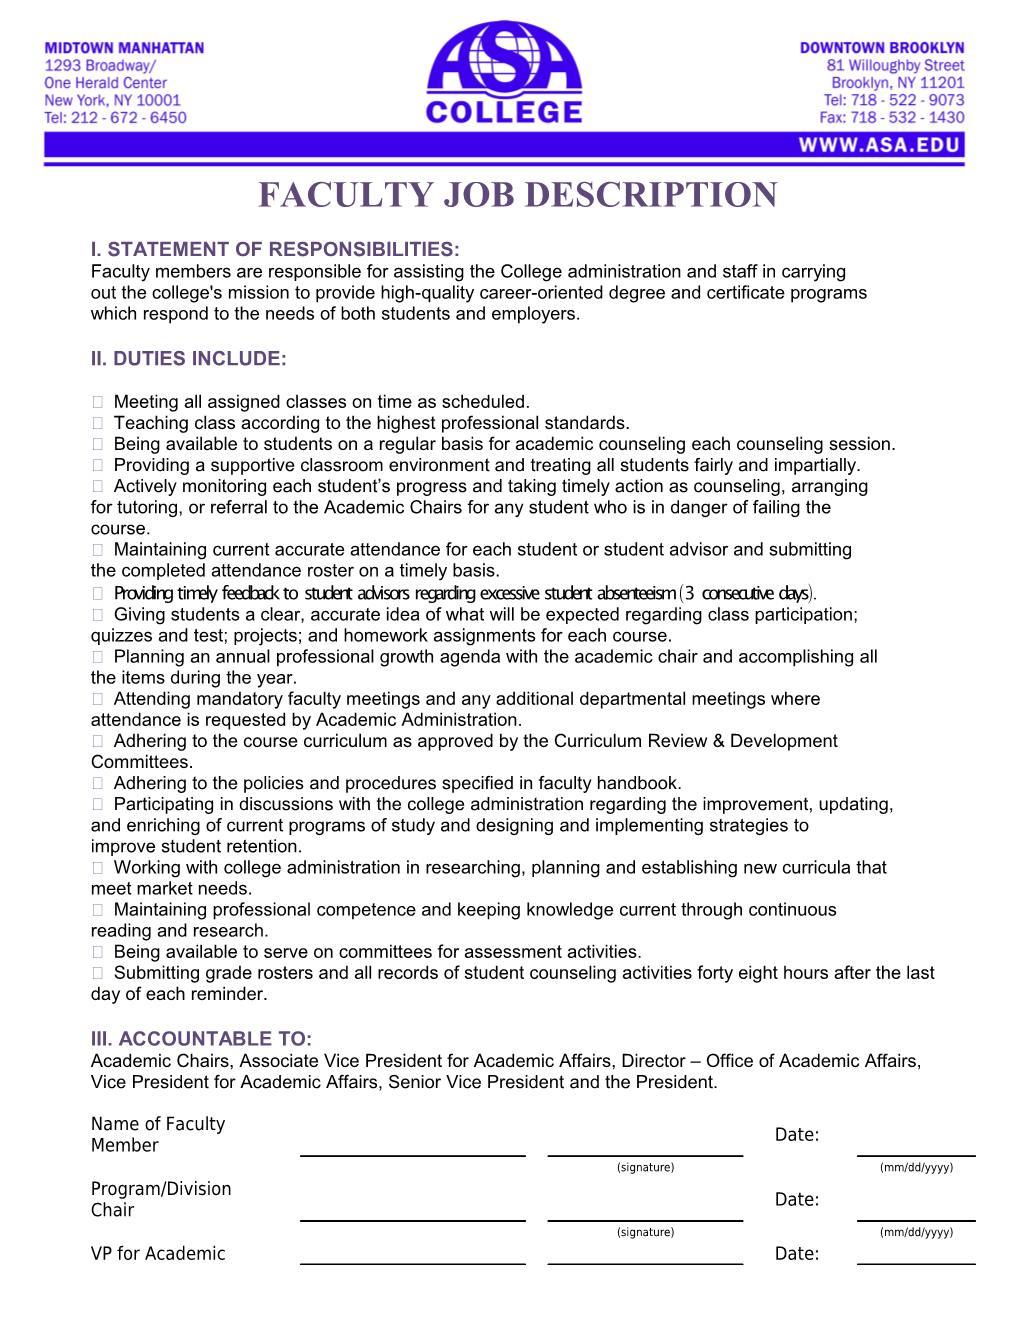 Faculty Job Description